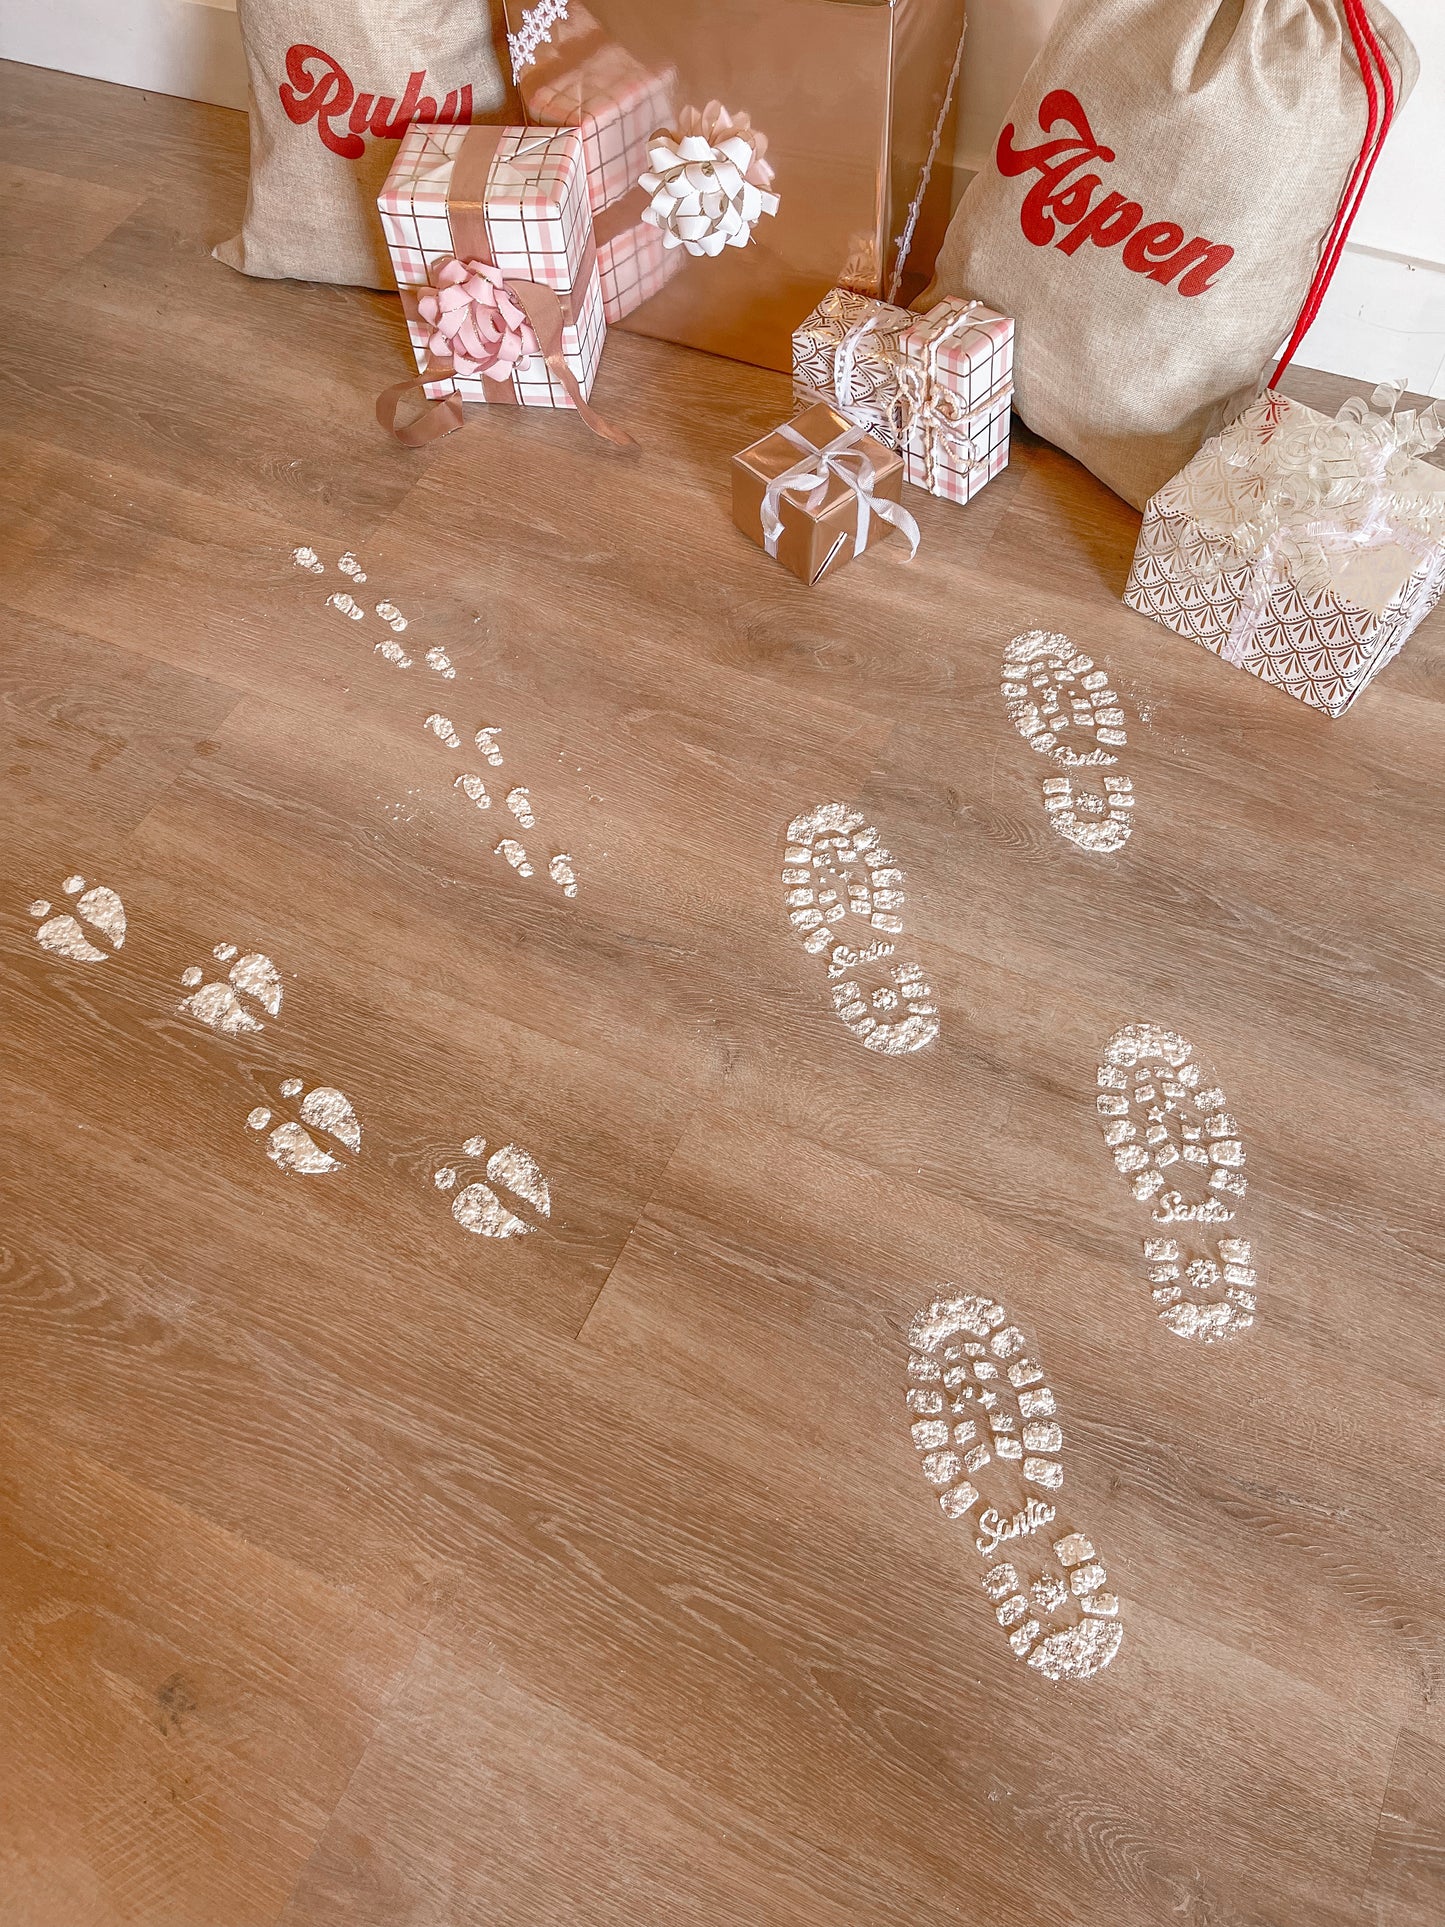 Elf Footprints Stencil